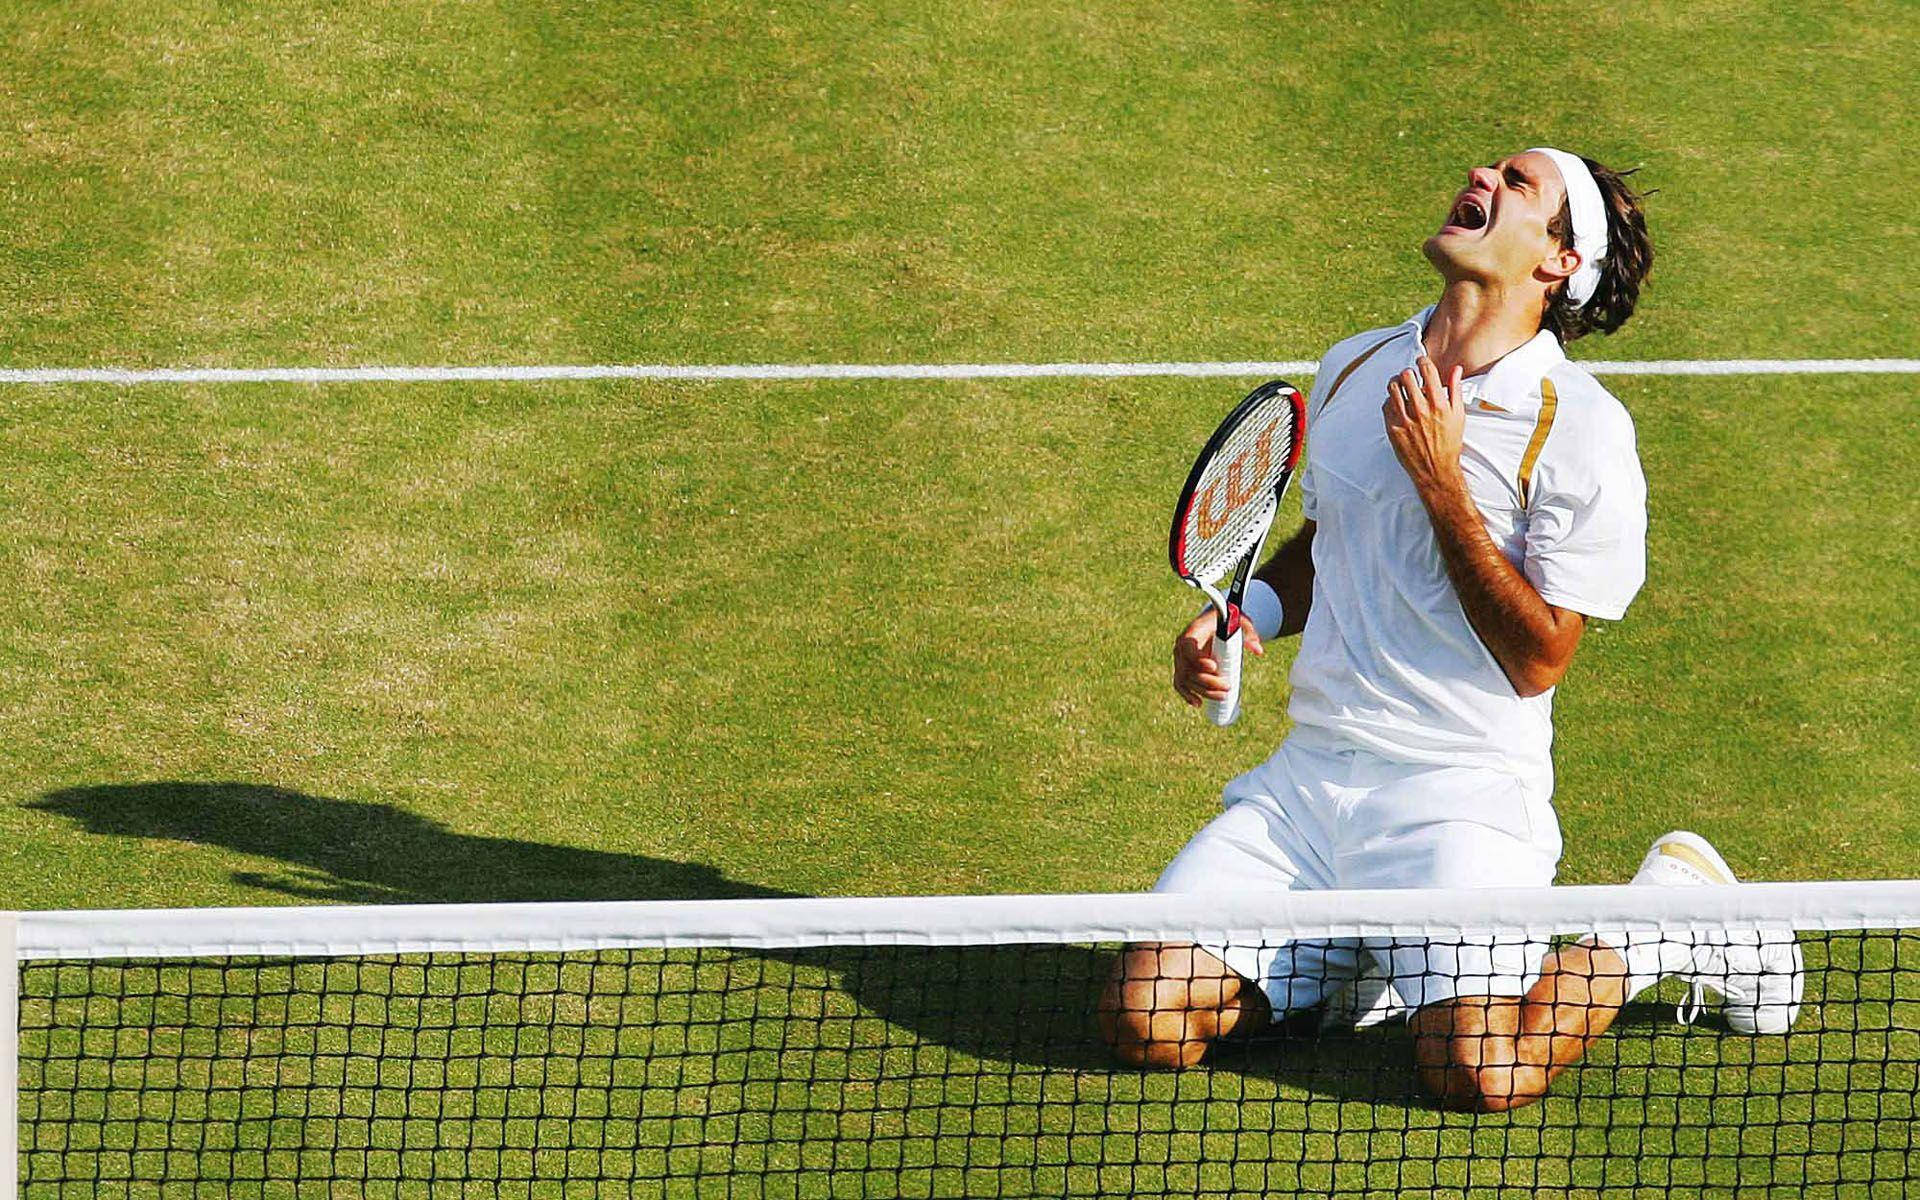 Roger Federer 2007 Wimbledon Champ